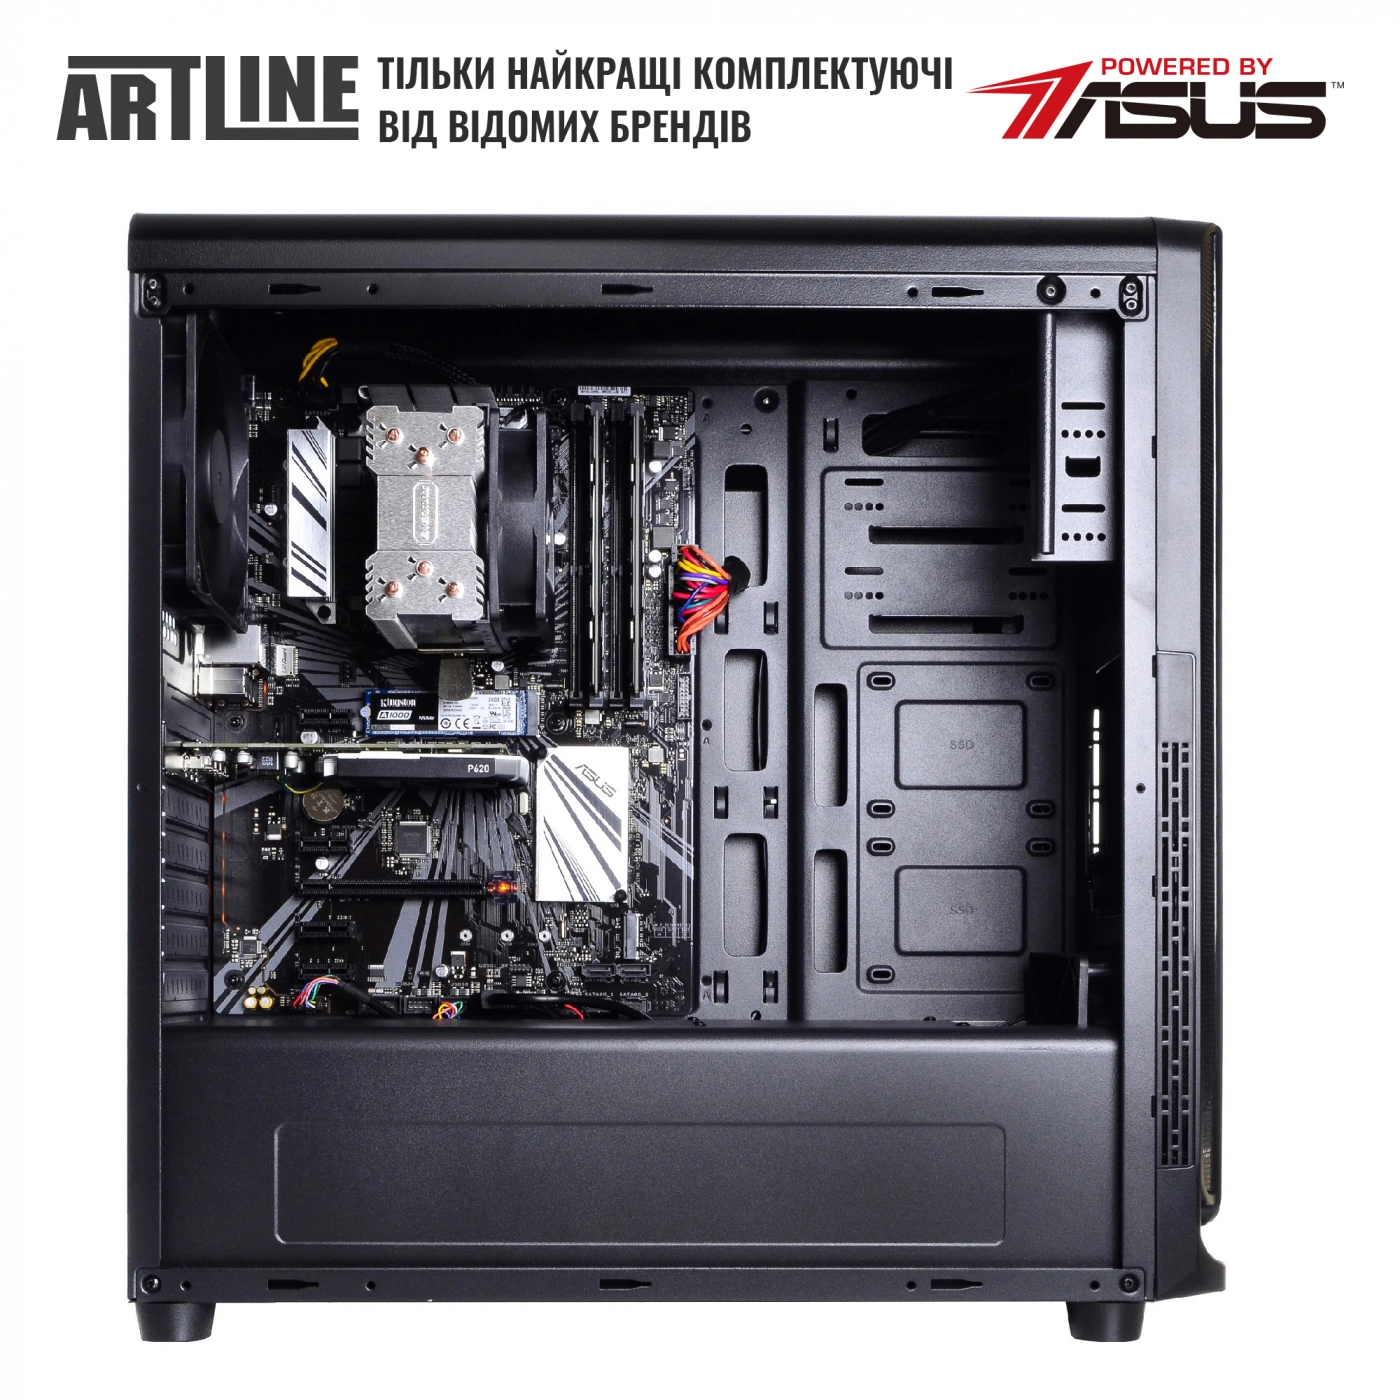 Купить Сервер ARTLINE Business T17v18 - фото 5